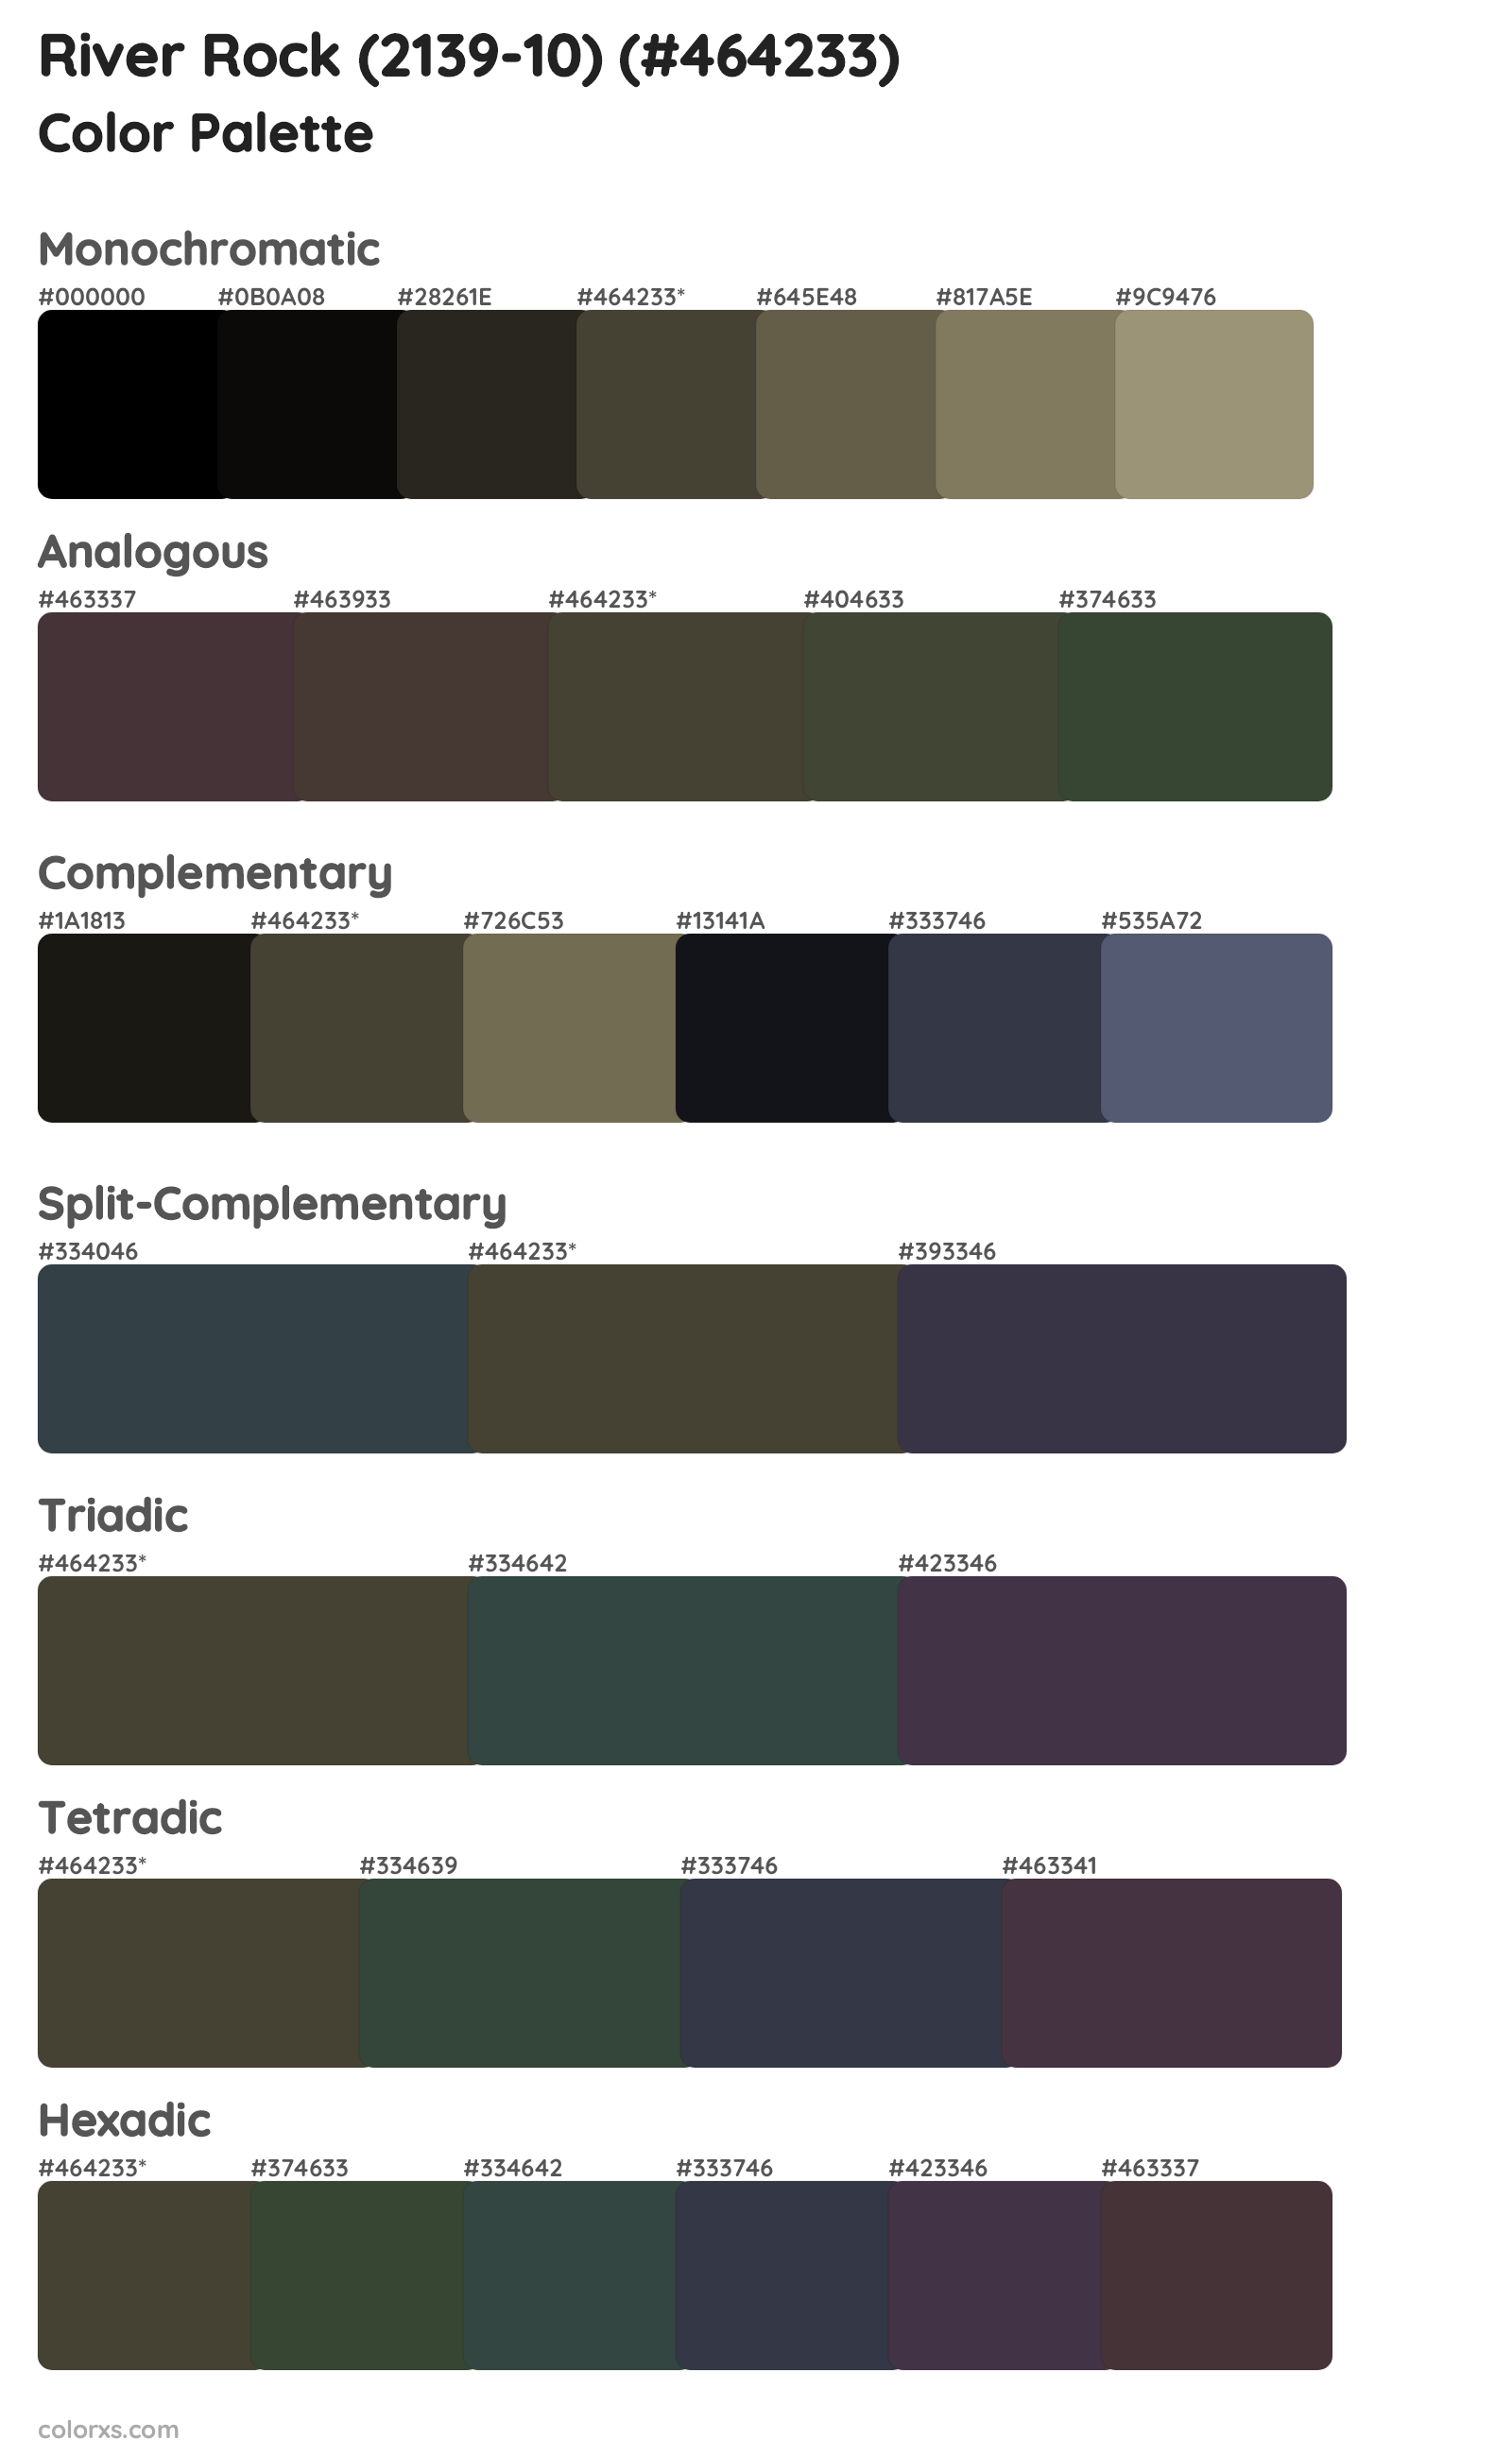 River Rock (2139-10) Color Scheme Palettes